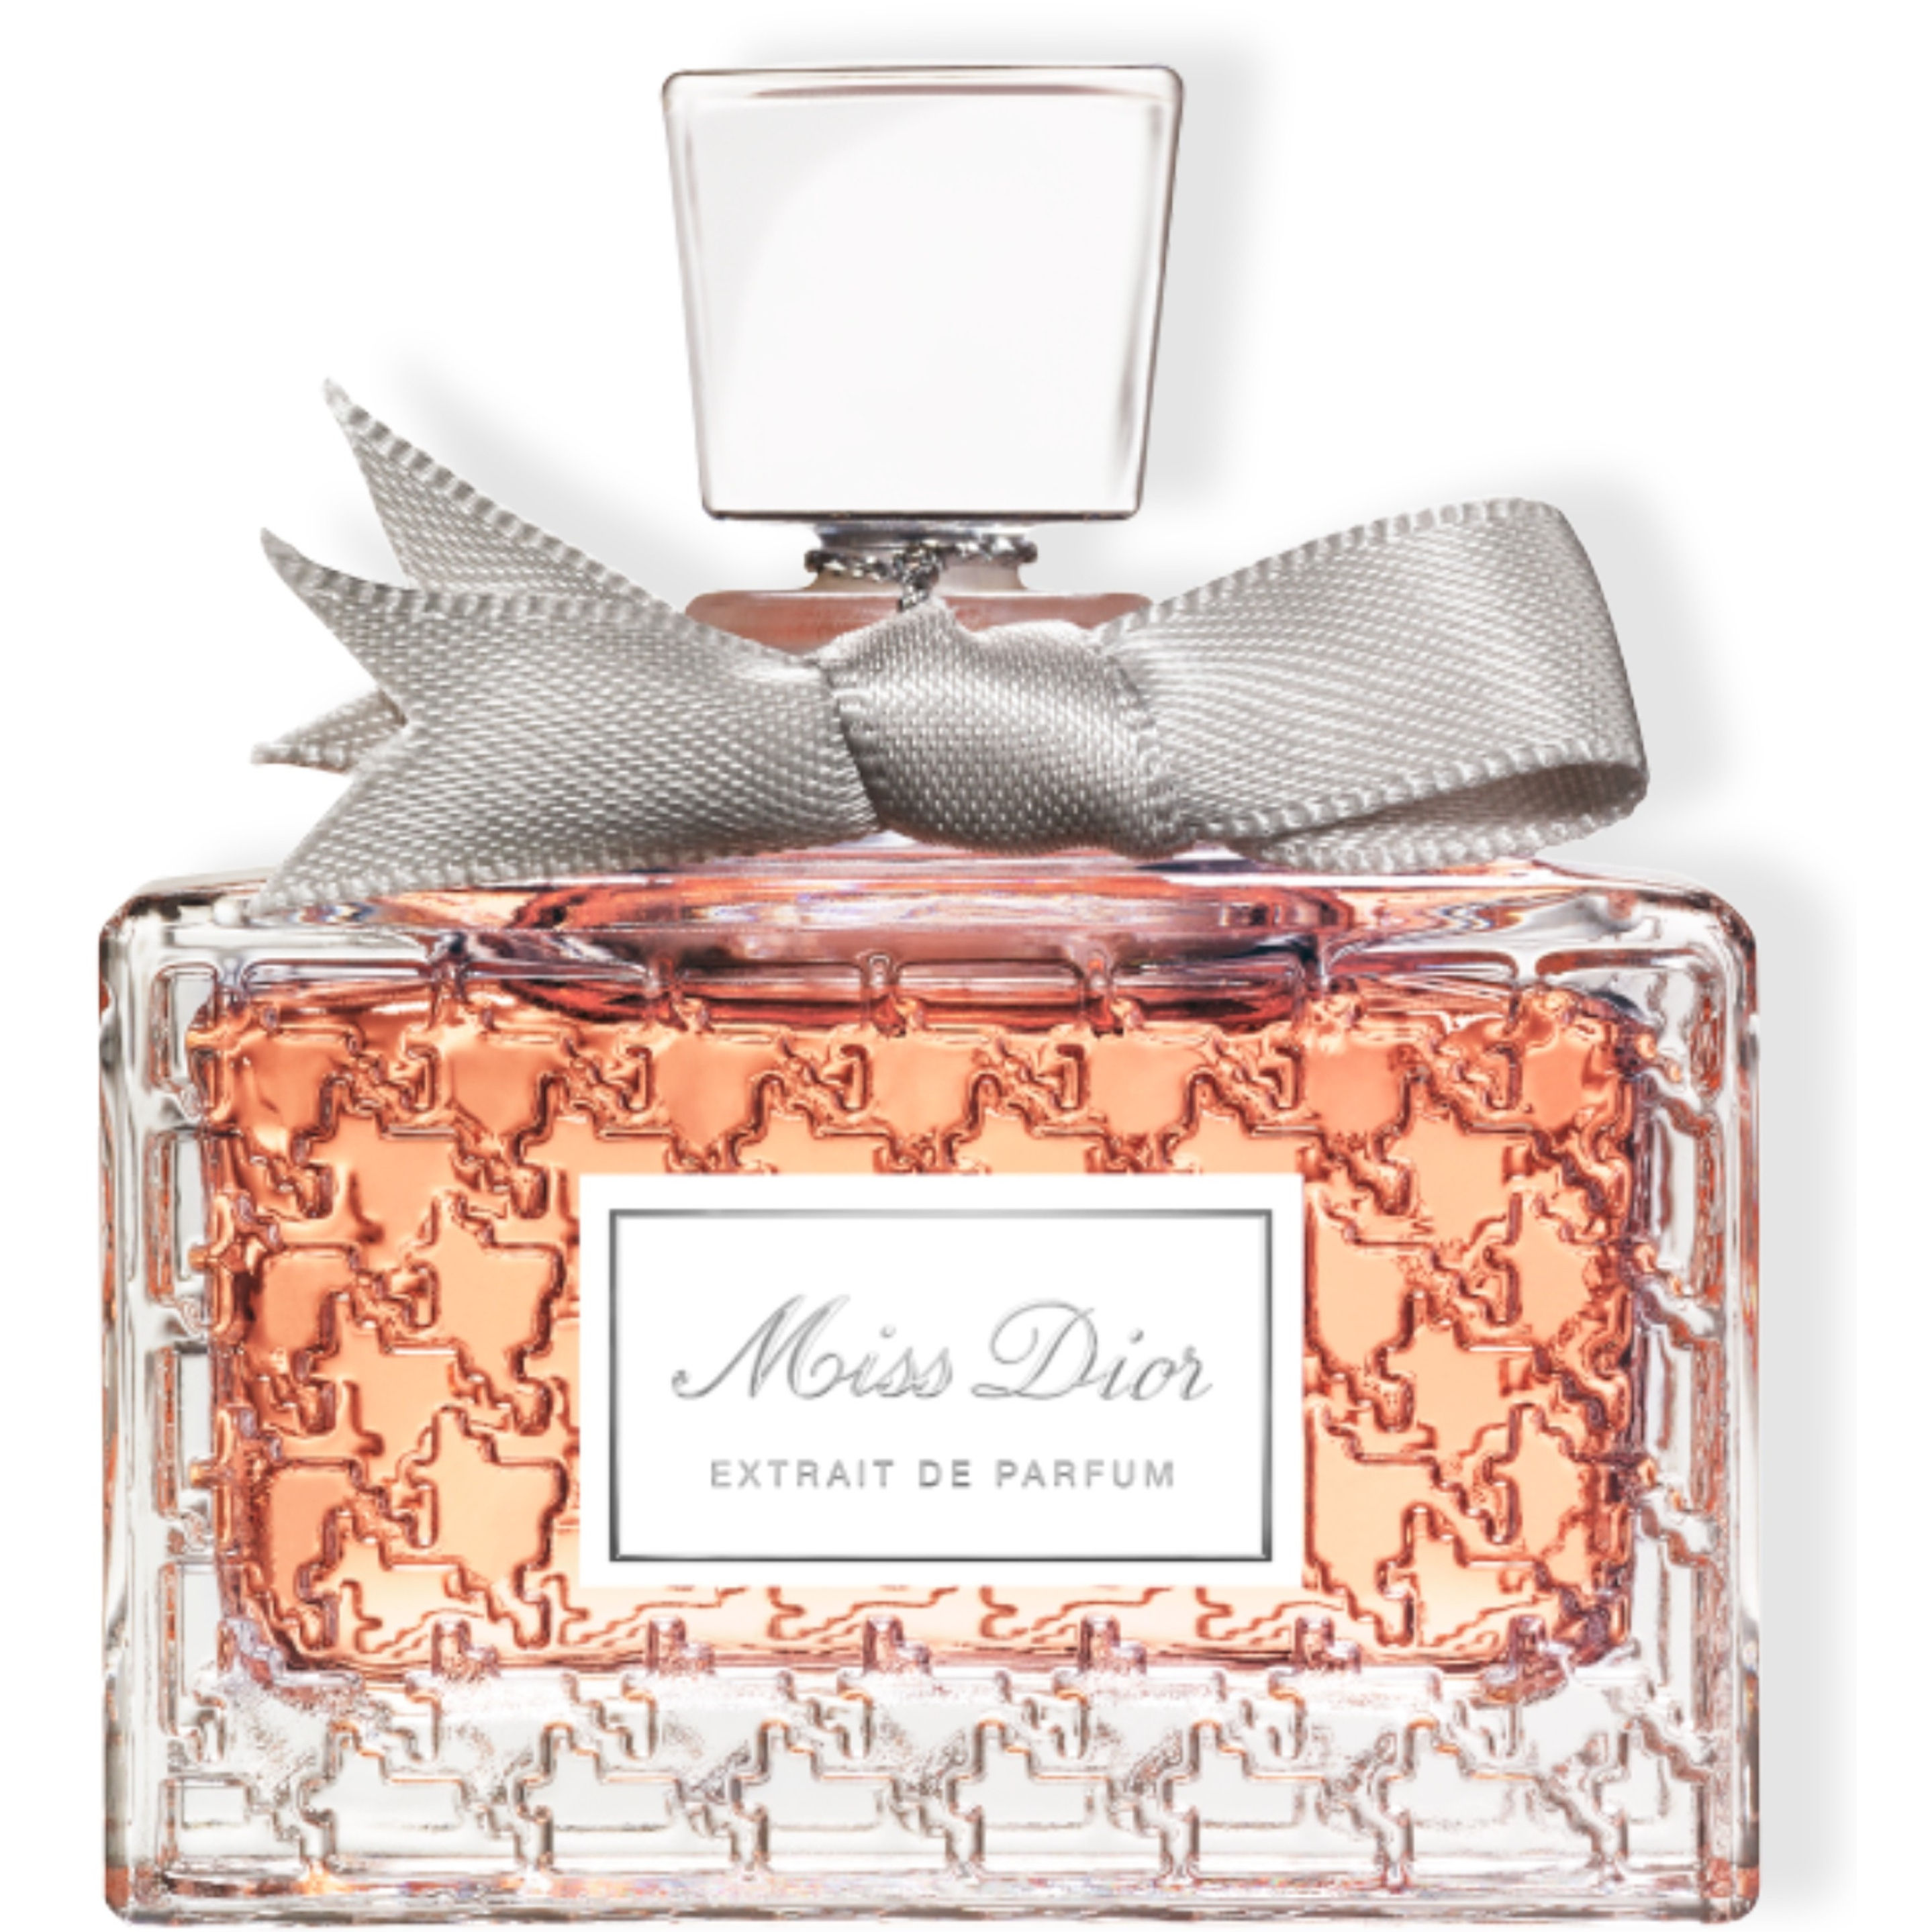 DIOR Miss Dior Extrait de Parfum 15 ml